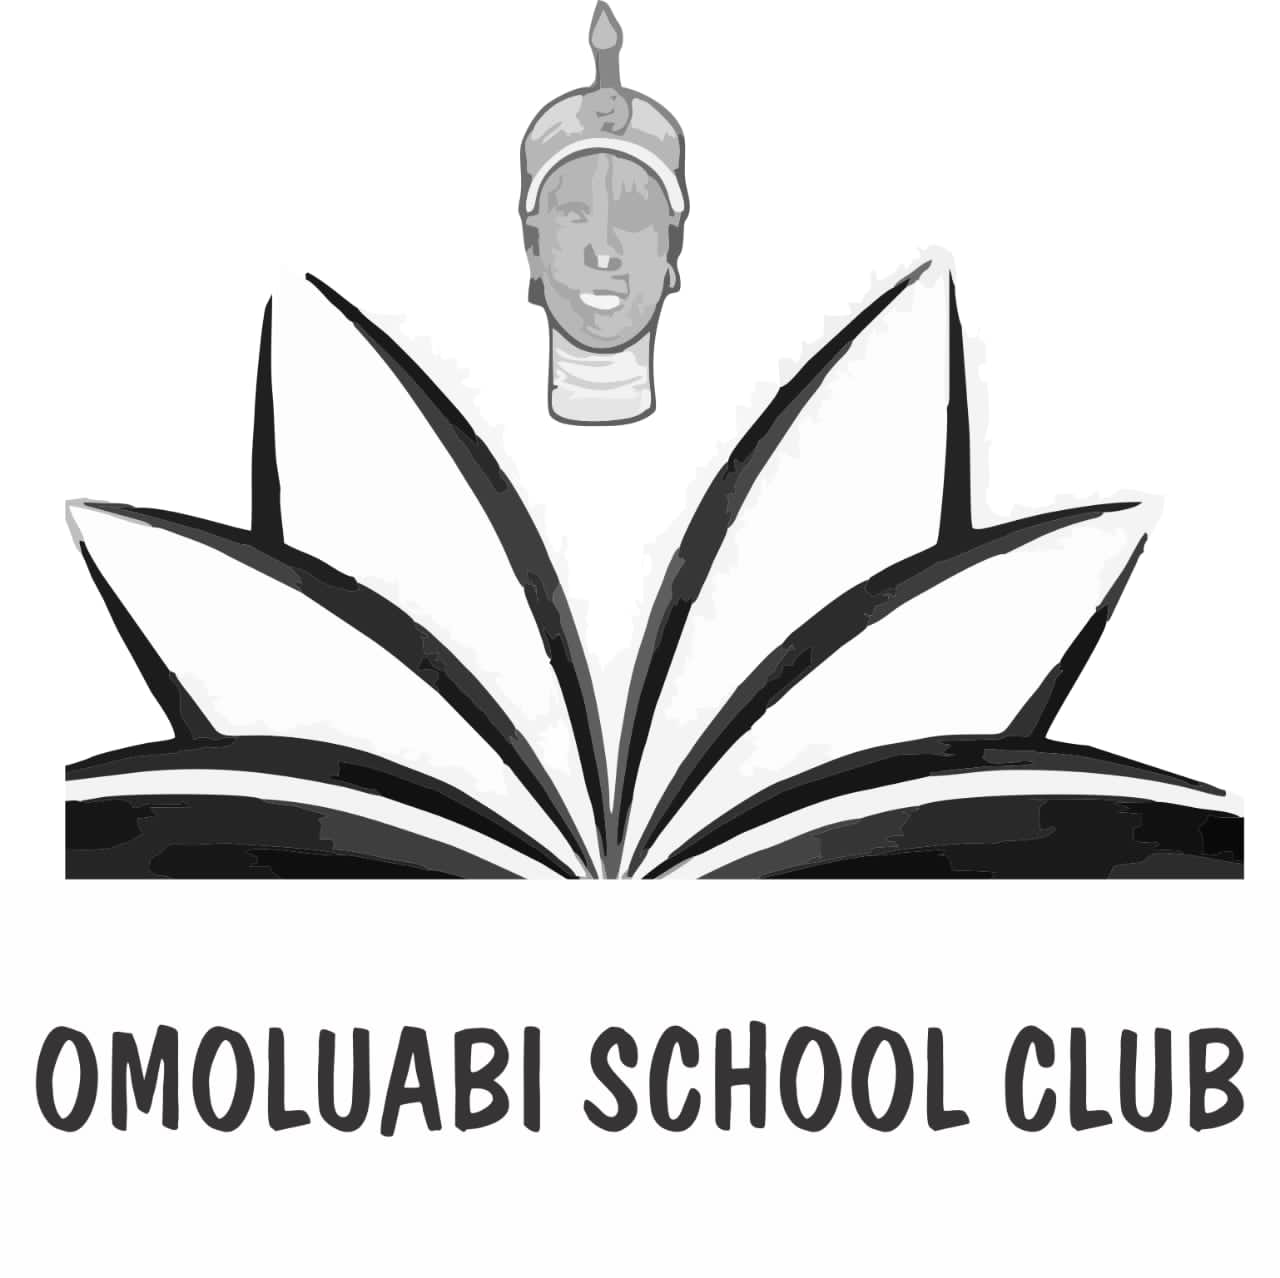 Yoruba Council Logo